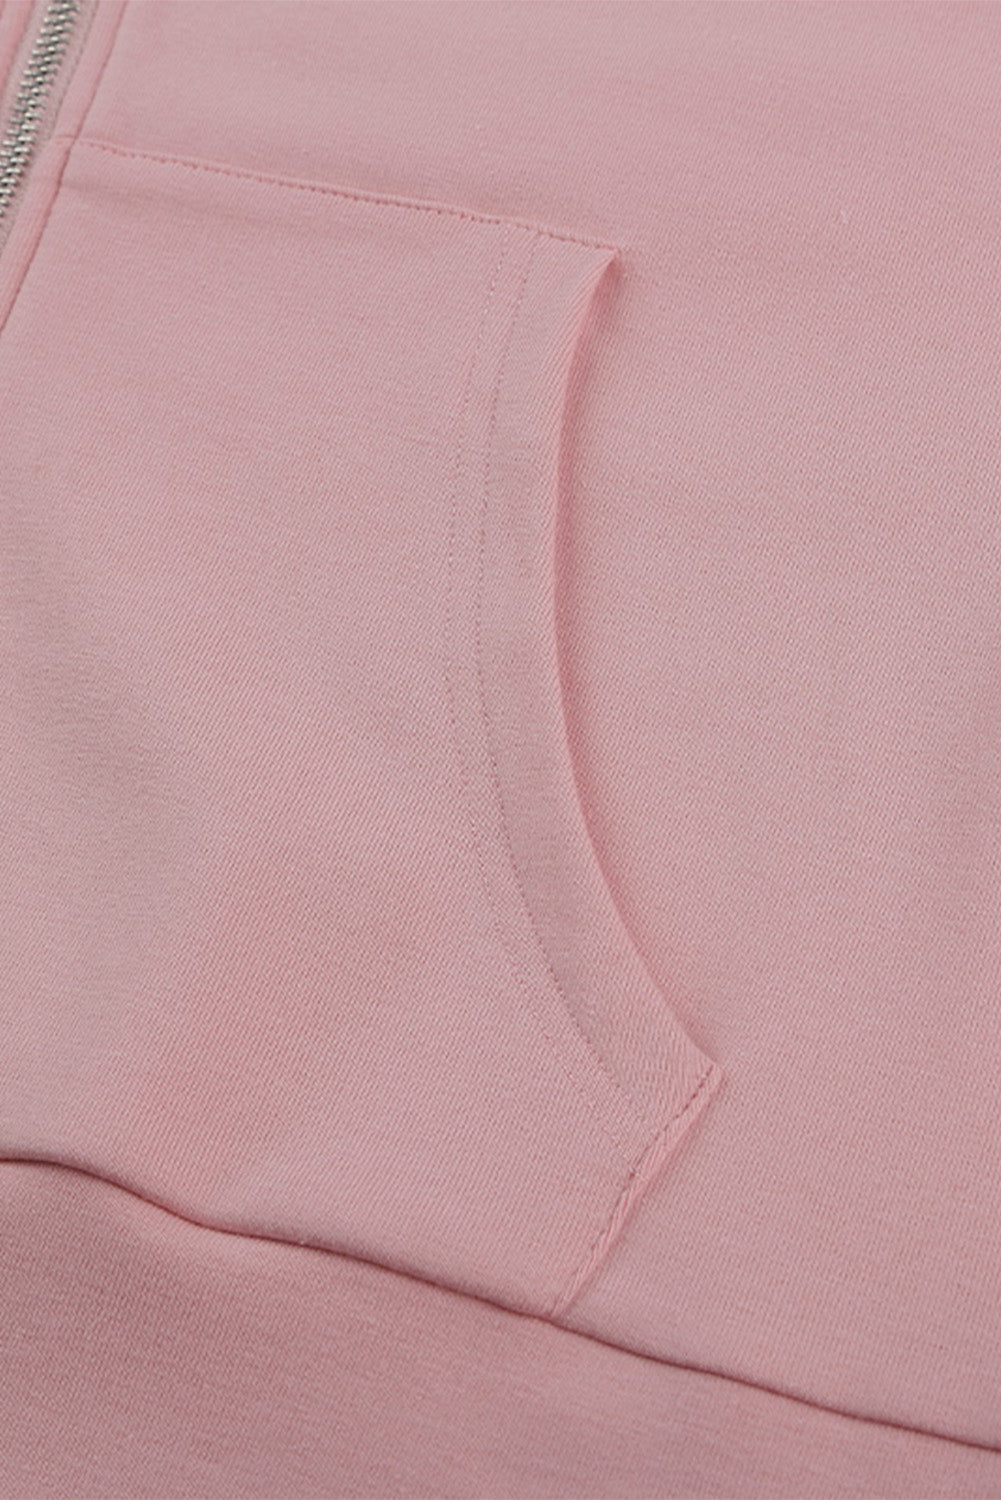 Women's Pink Full Zip Hoodie Coat with Floral Print Hooded Inner